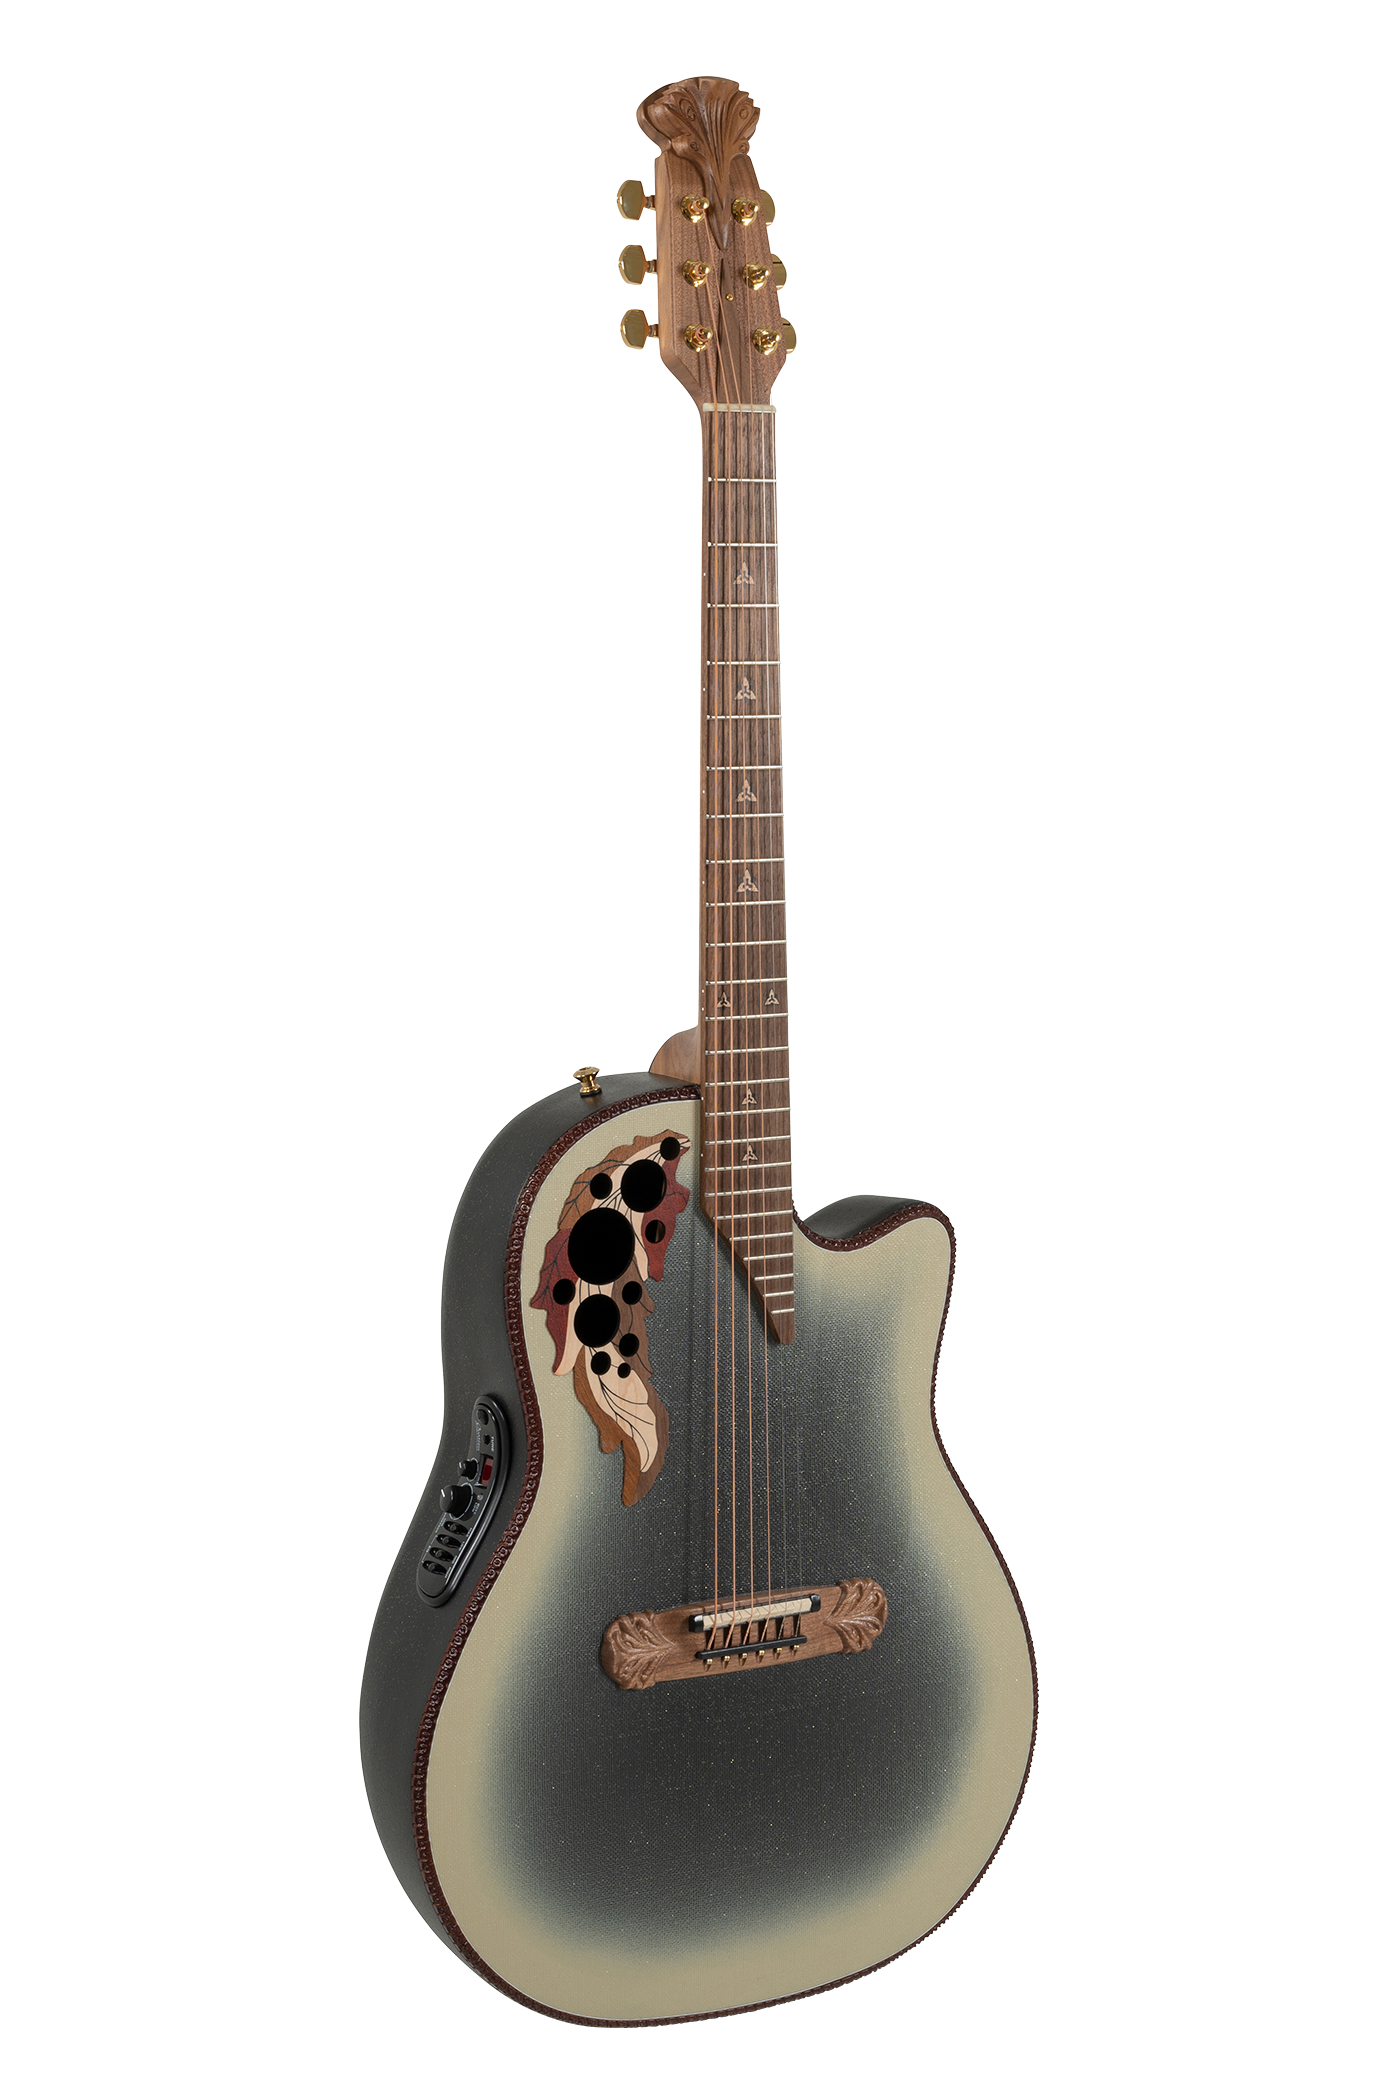 Ovation Guitar Strap Ultra® Padded Ball Glove Leather, Black, .531.9137-5Z